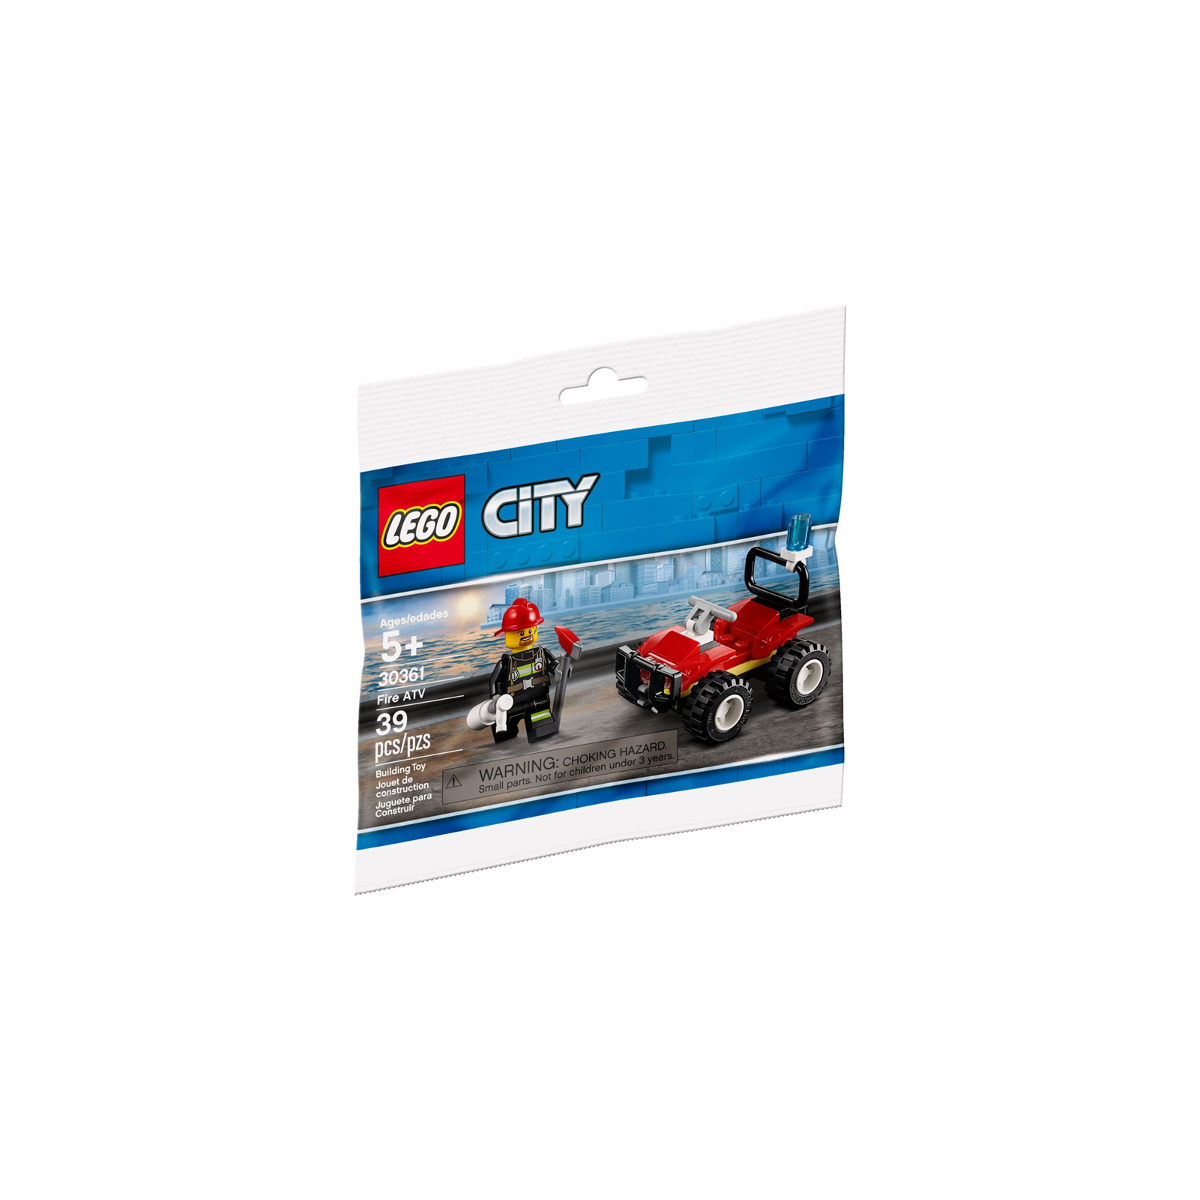 LEGO Fire ATV polybag - 30361